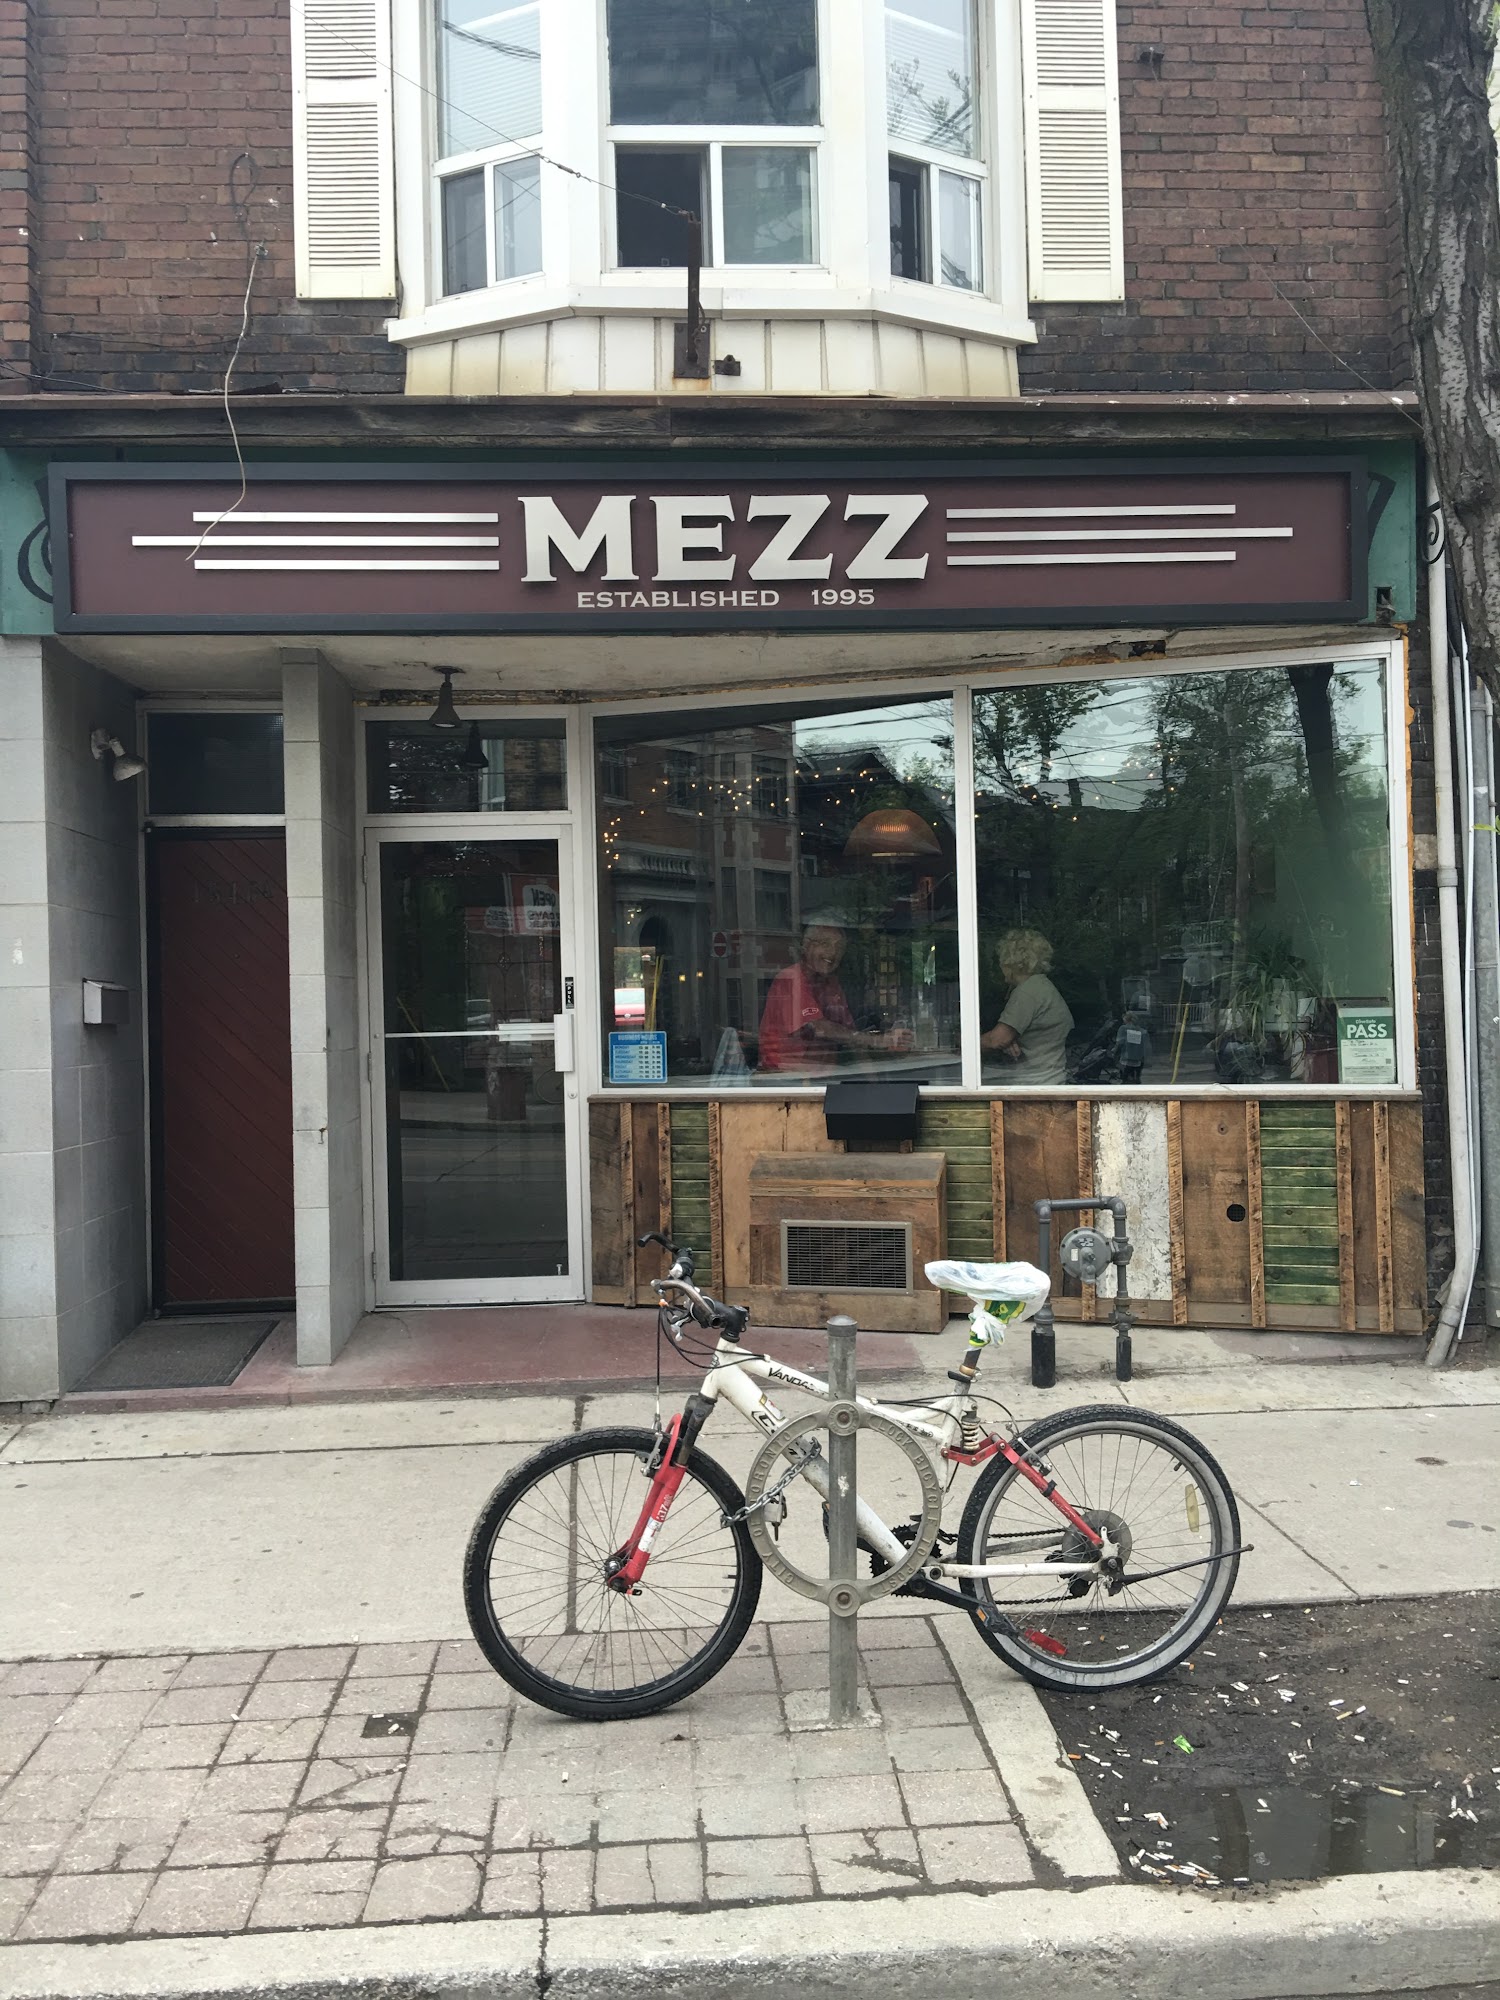 The Mezz